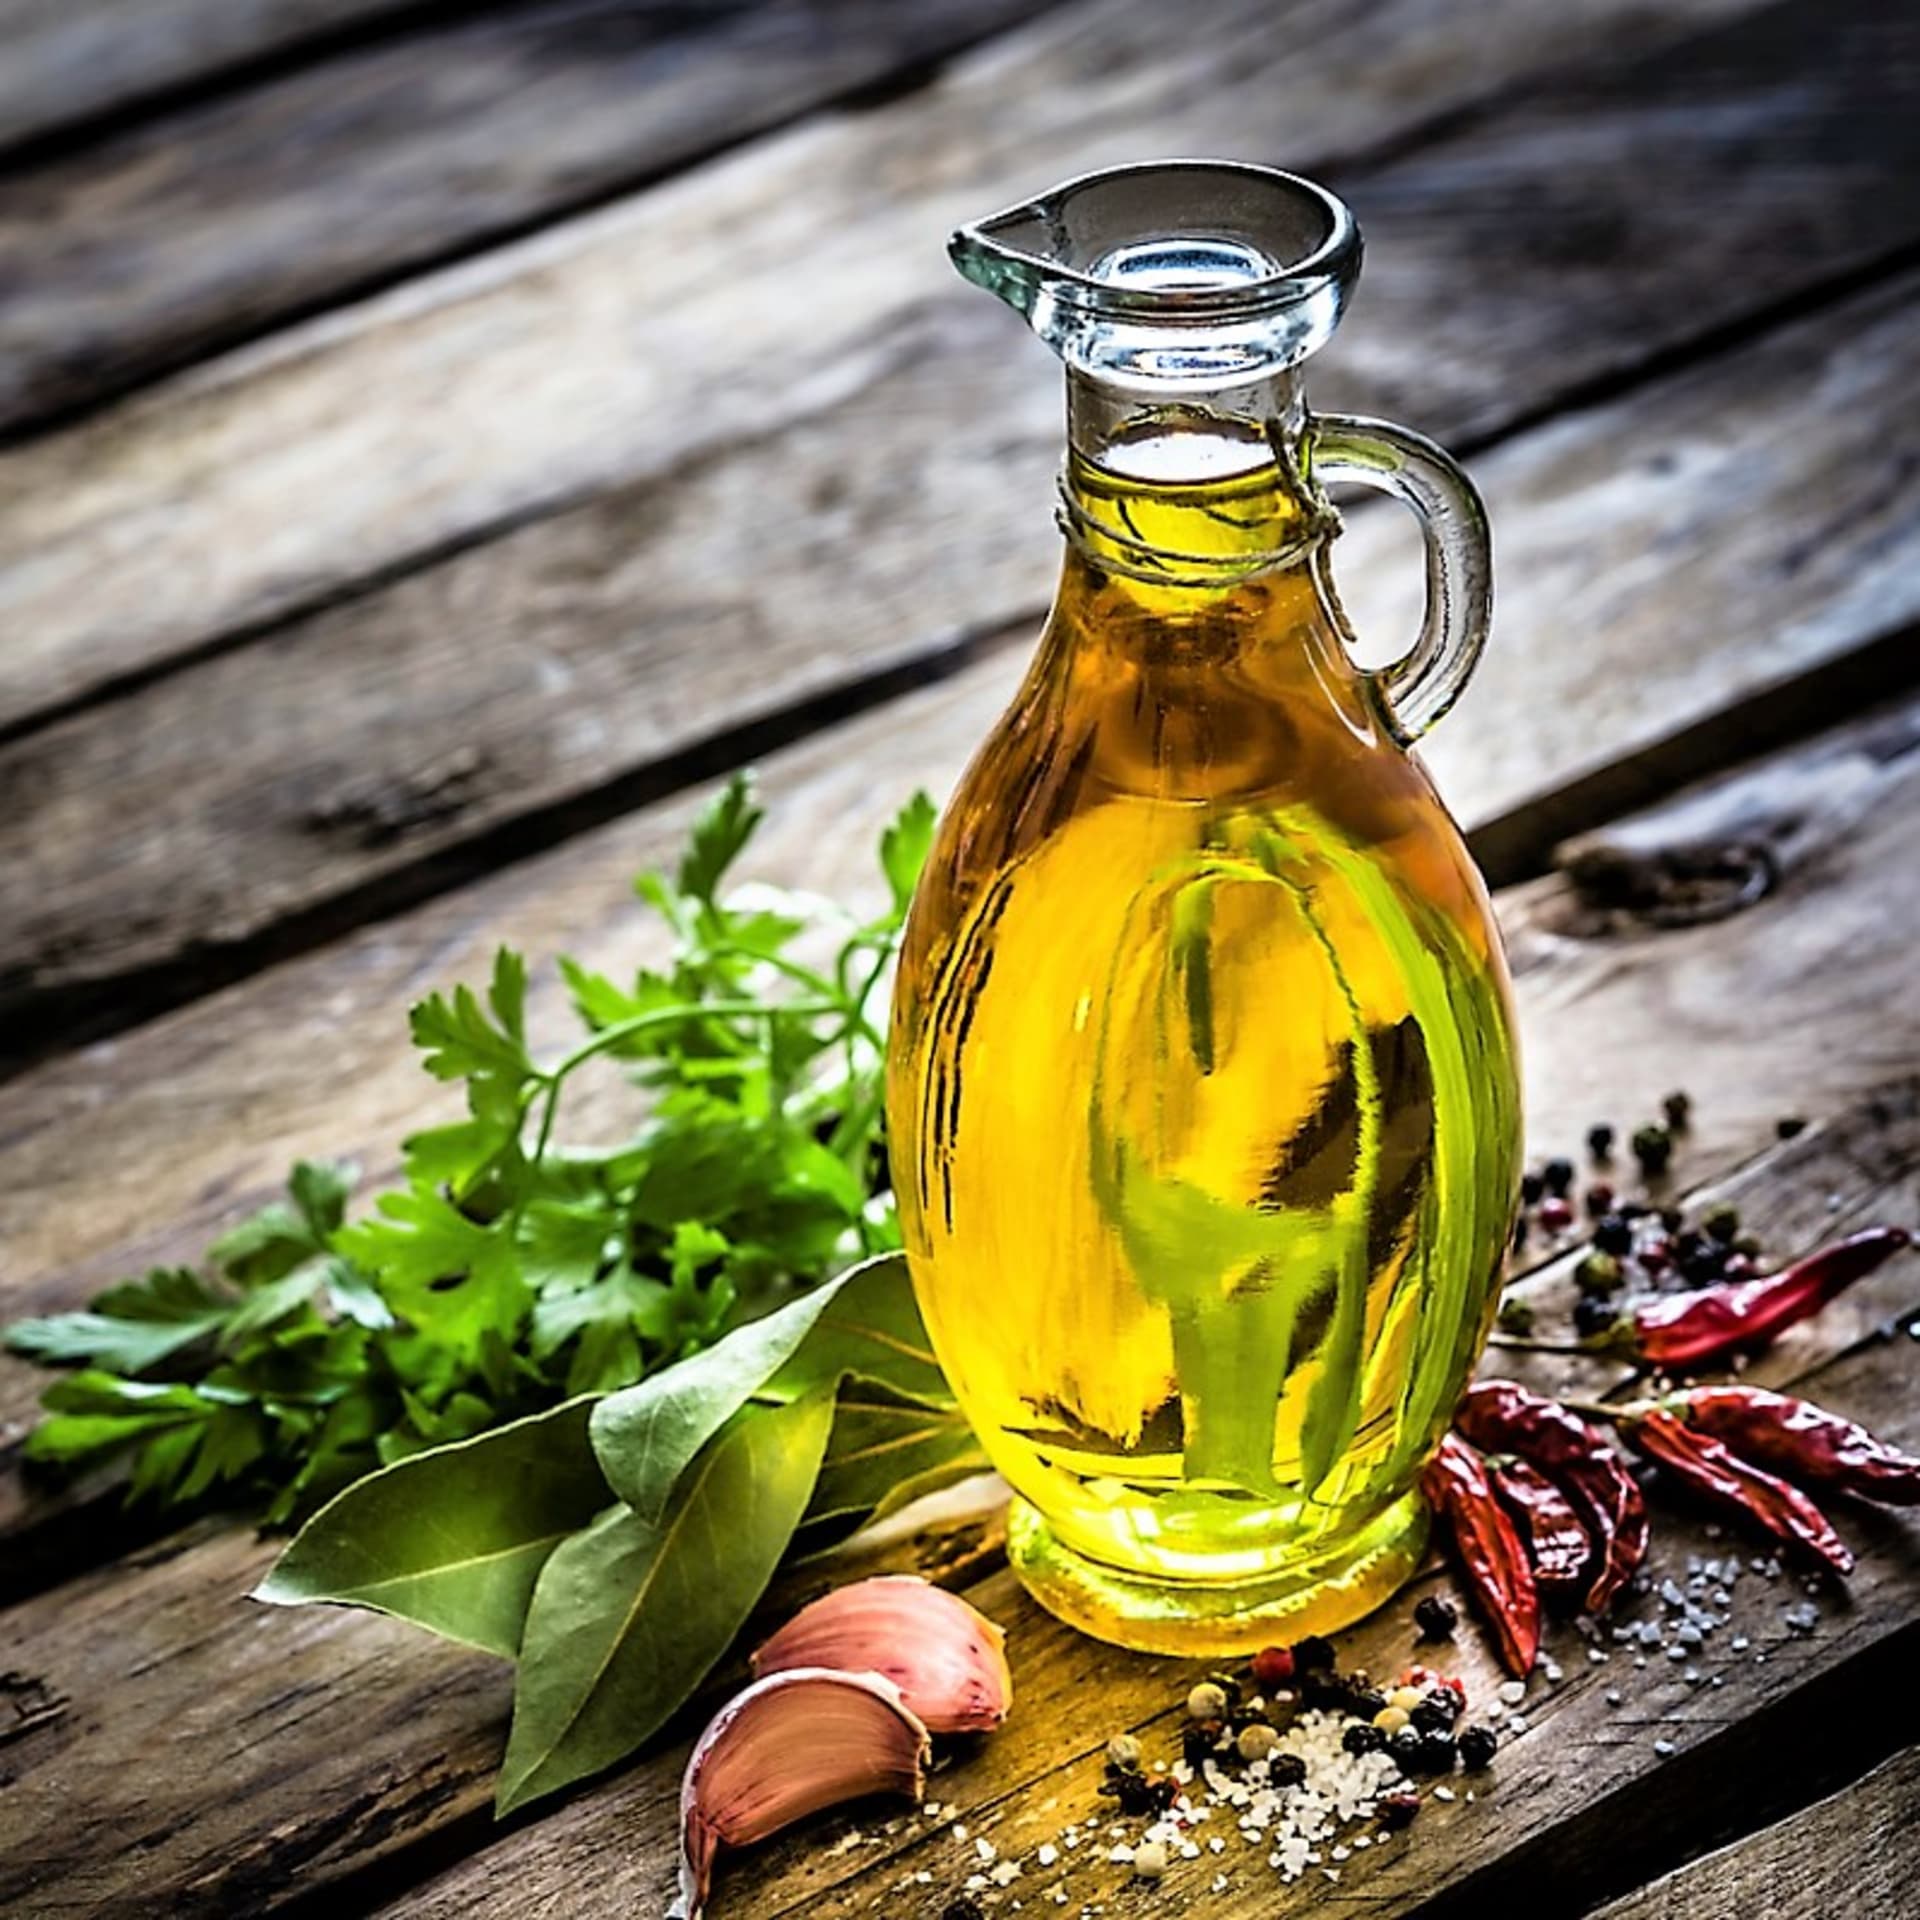 Na domácí výrobu ochuceného oleje pro studenou kuchyni nakládáme bylinky a spol. optimálně do zastudena lisovaného (panenského) oleje olivového nebo slunečnicového